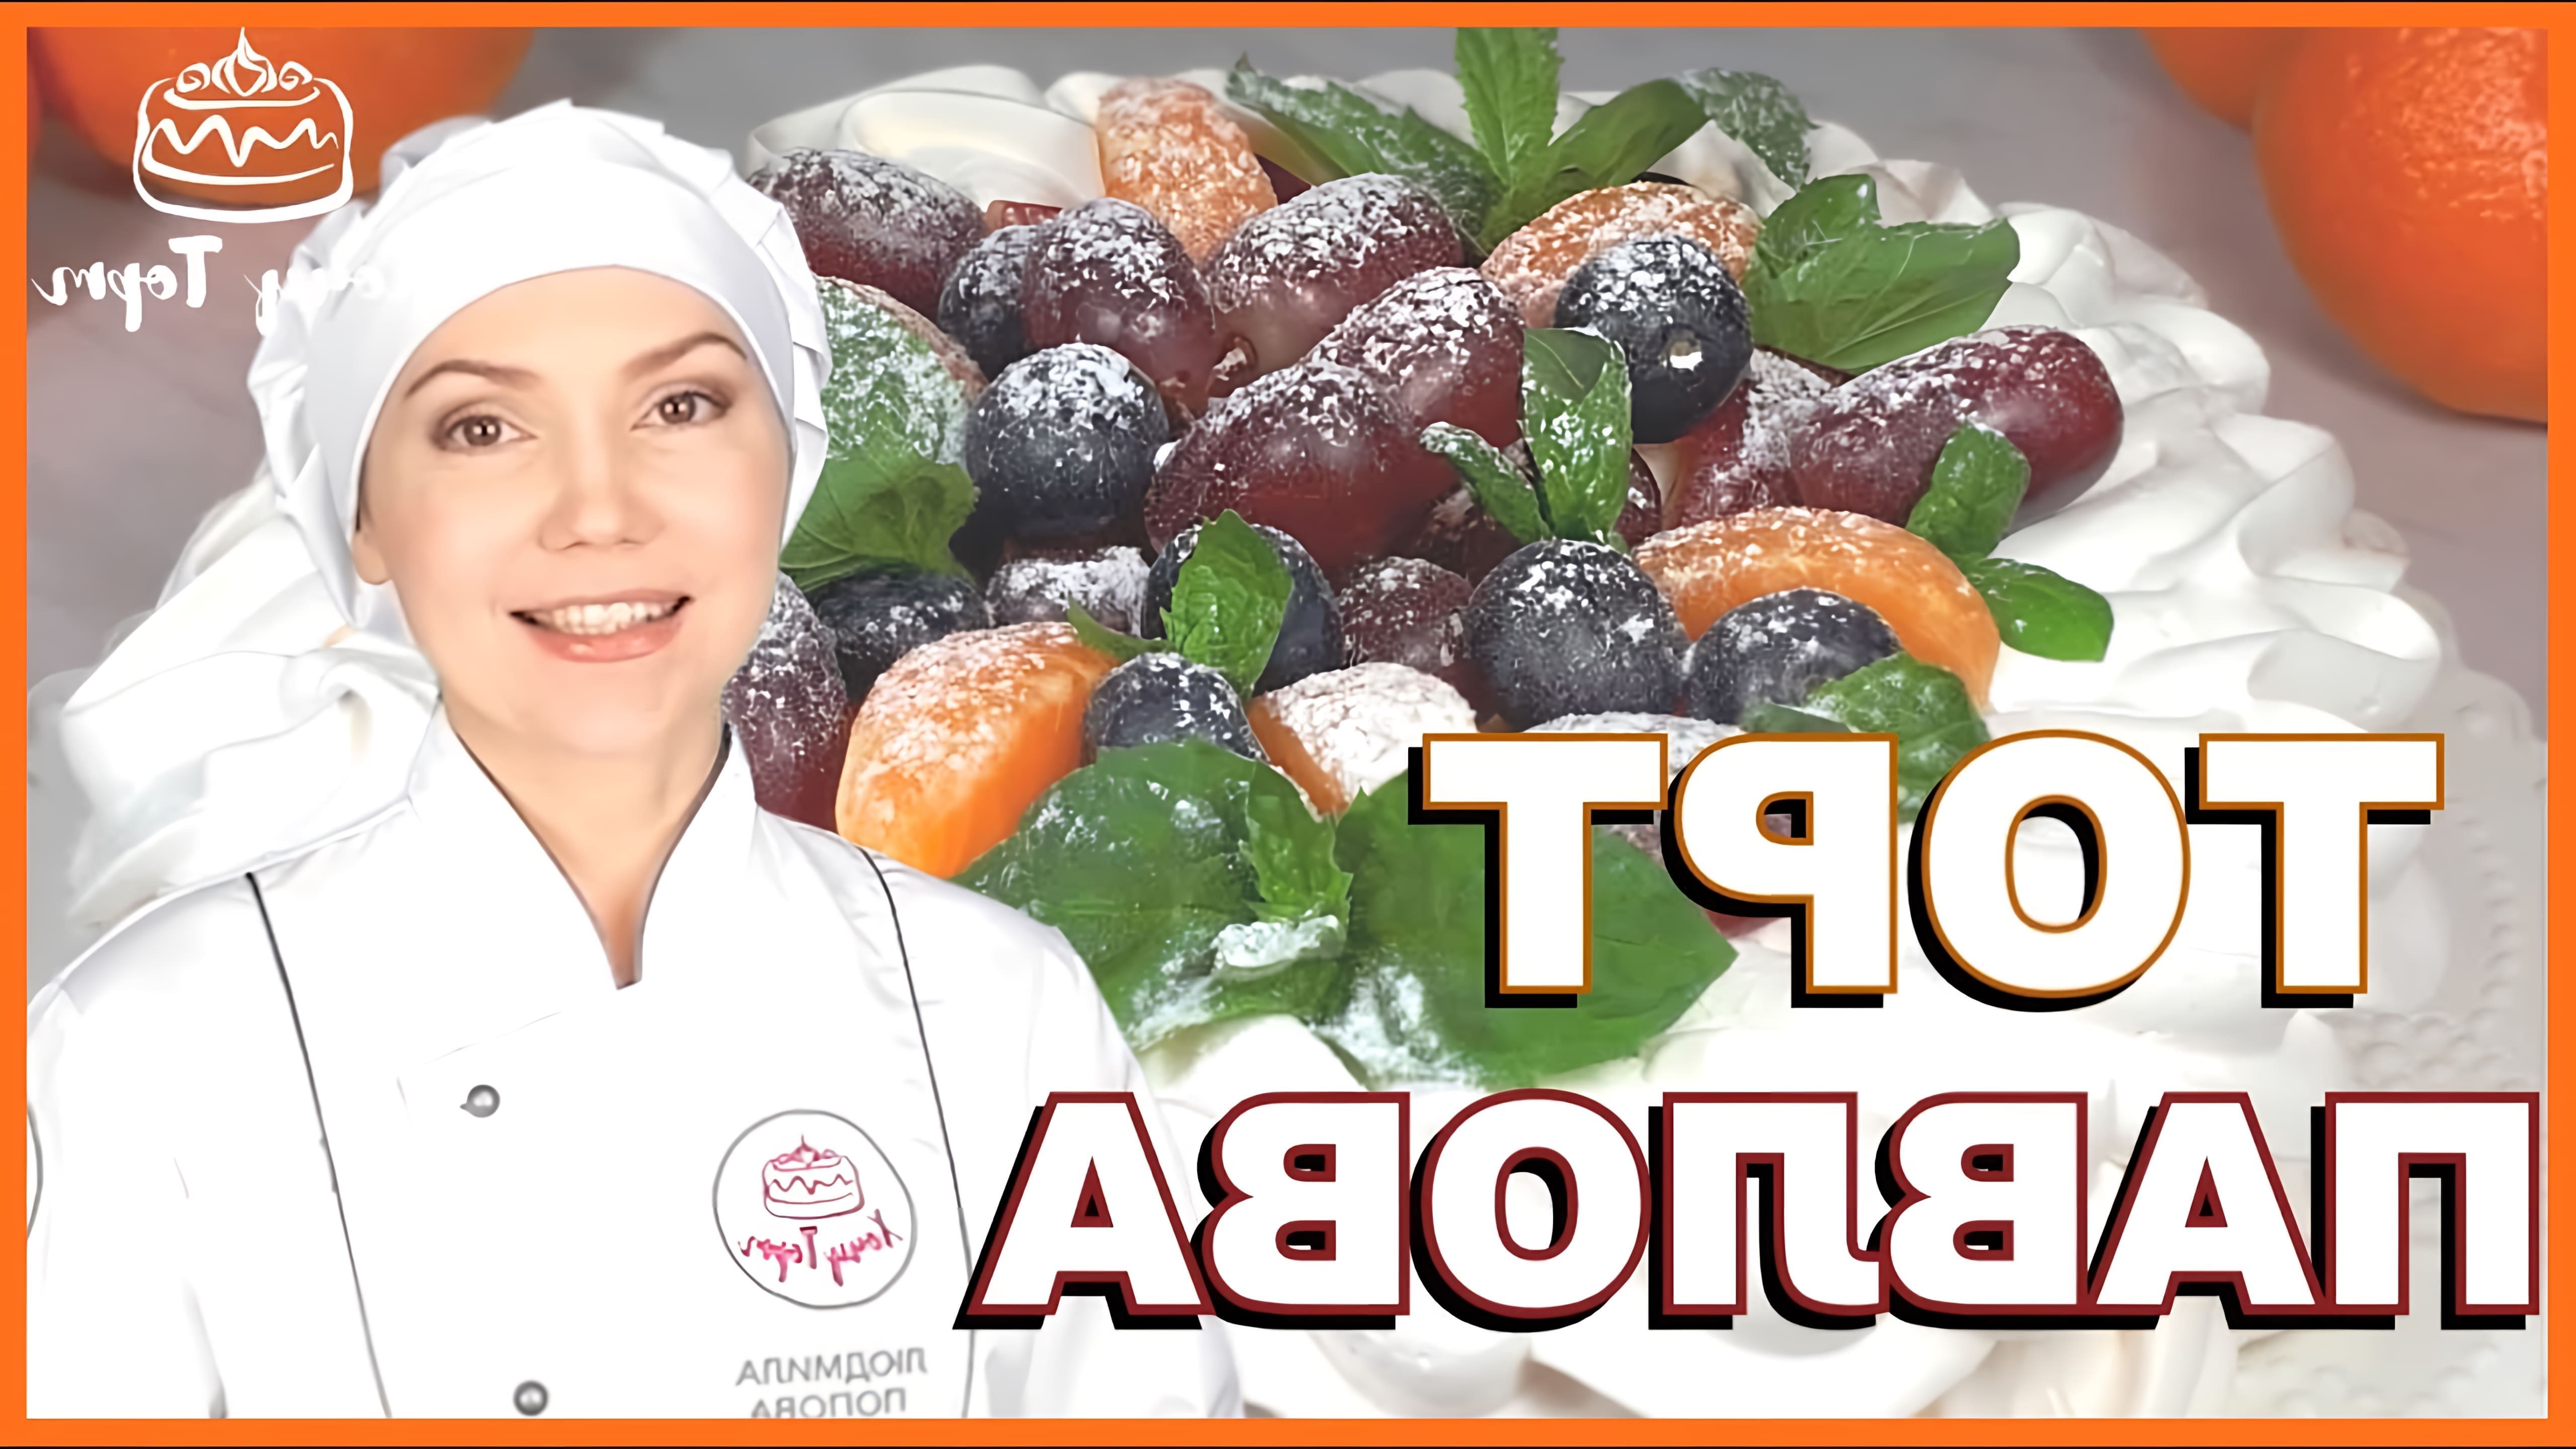 В этом видео демонстрируется процесс приготовления торта "Павлова" - легкого и нежного десерта со свежими ягодами